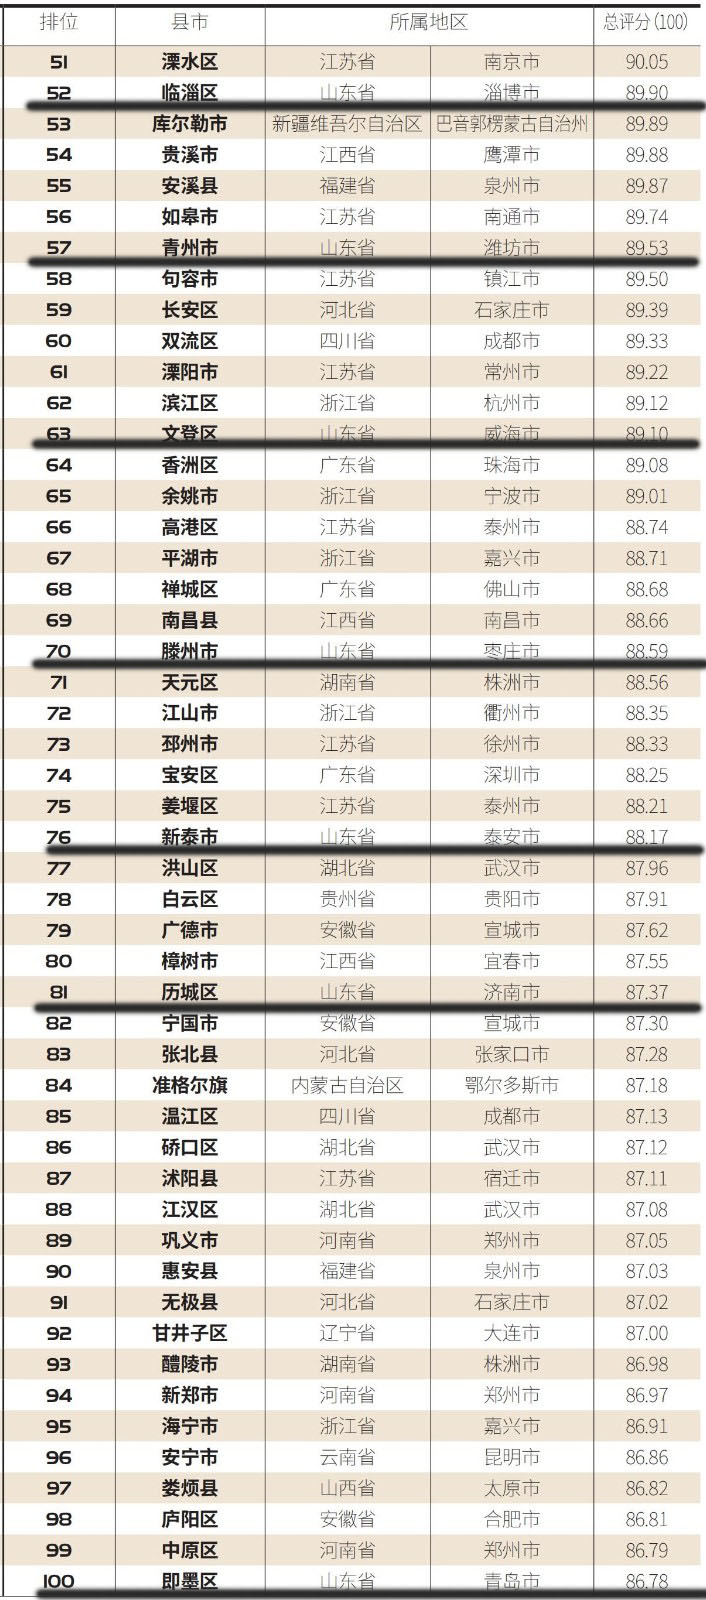 《小康》杂志社“2021中国县域综合实力百强榜”